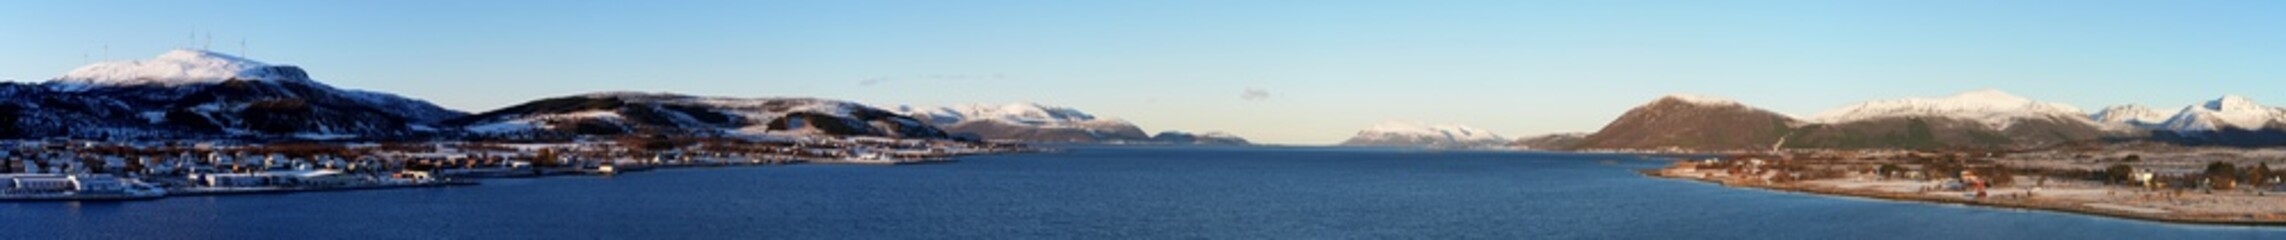 Meerenge bei Sortland, Vesteralen, Norwegen, Panorama, Blick in die Weite der Meerenge zwischen den...